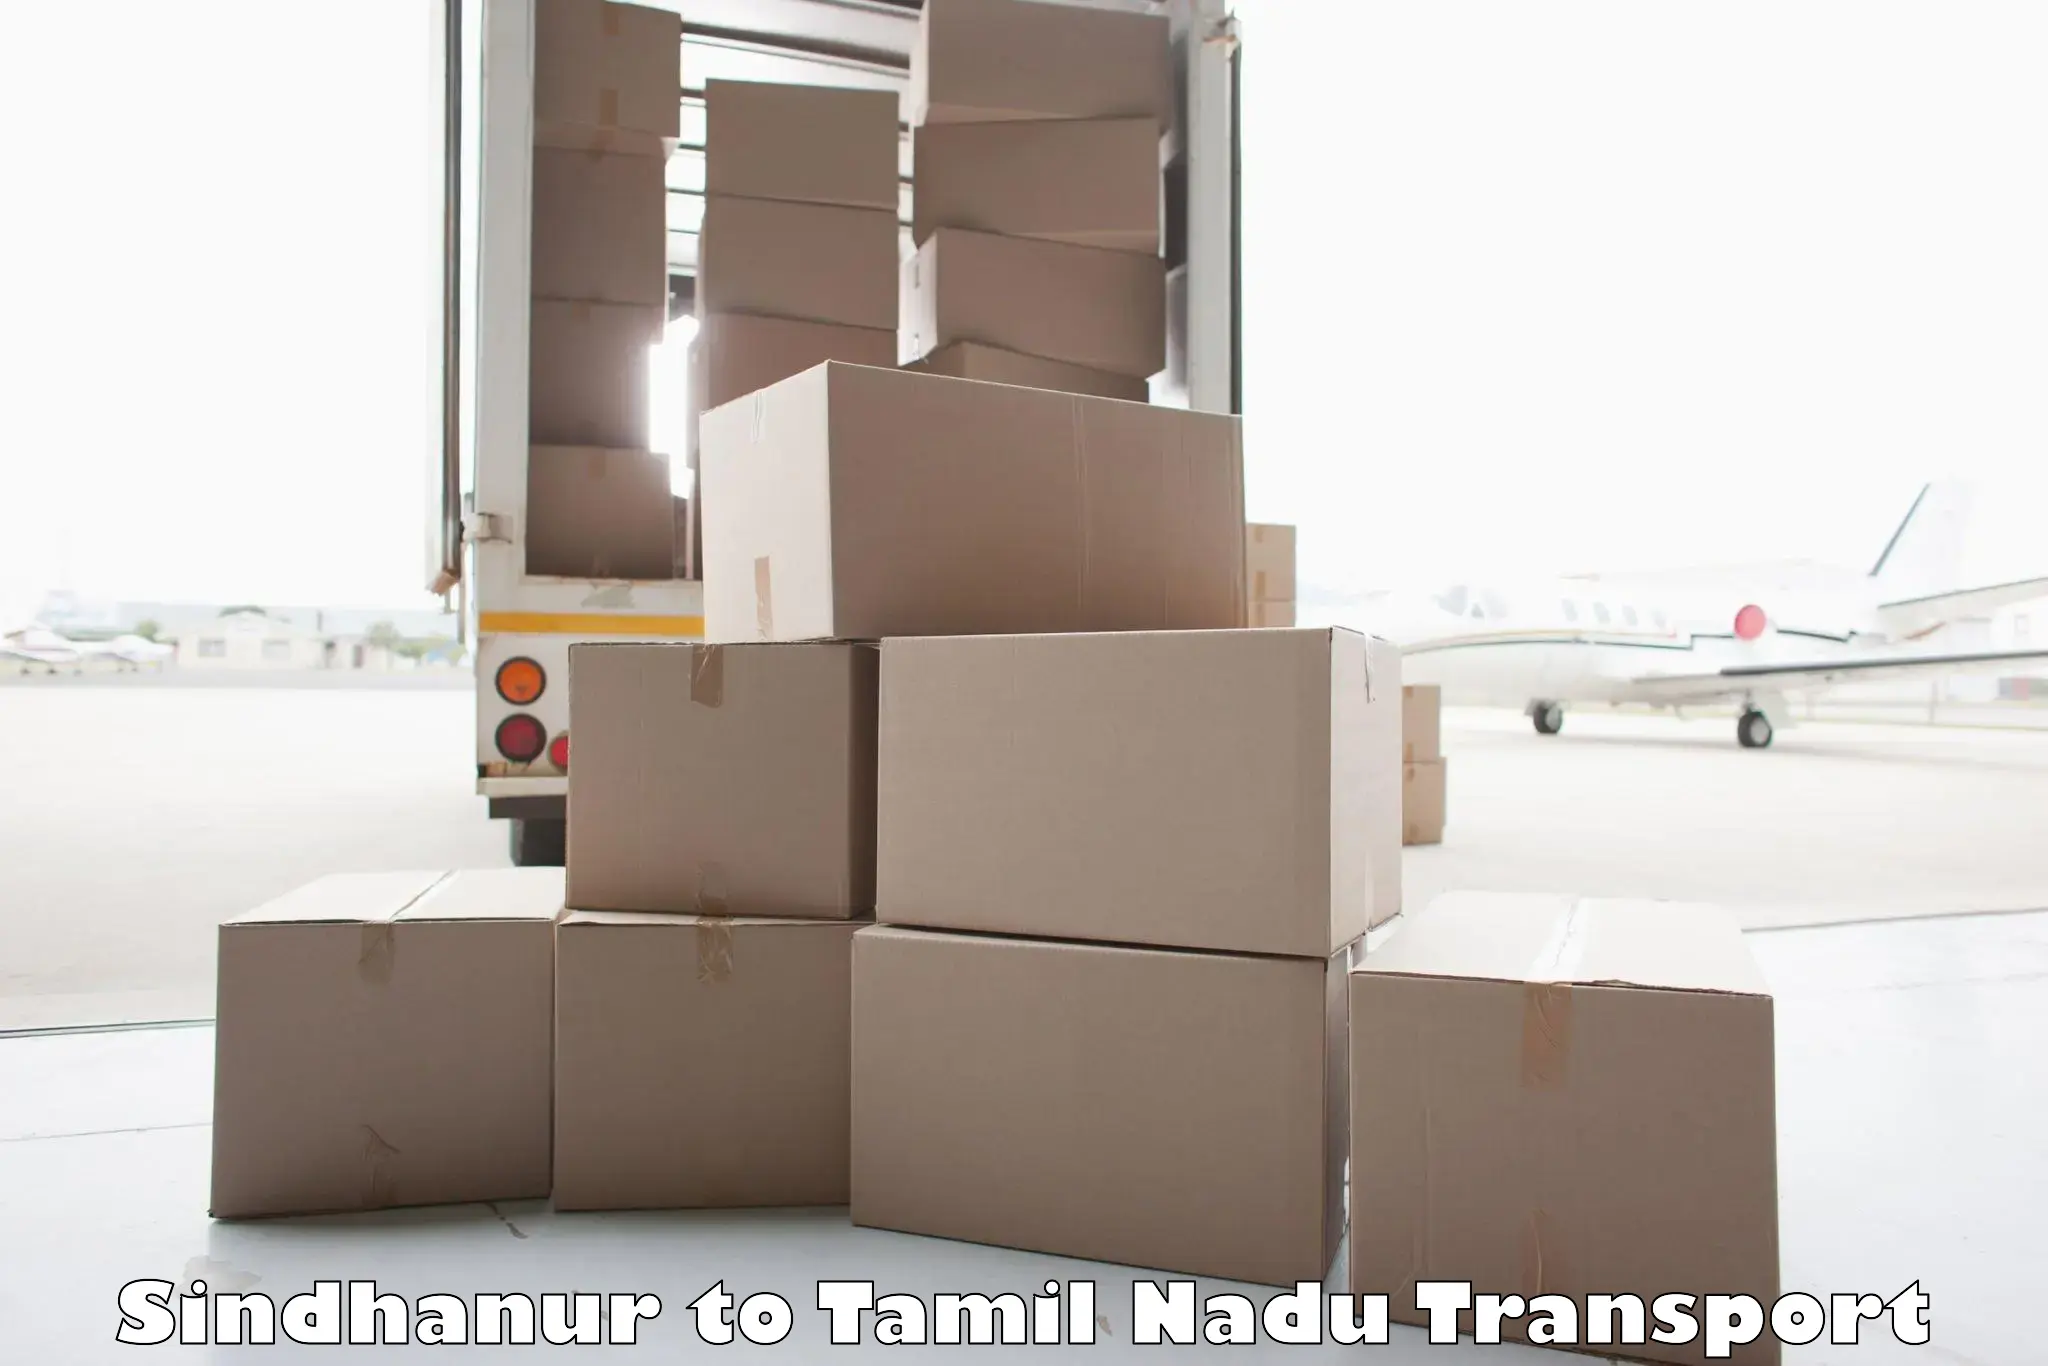 Furniture transport service Sindhanur to Kanyakumari